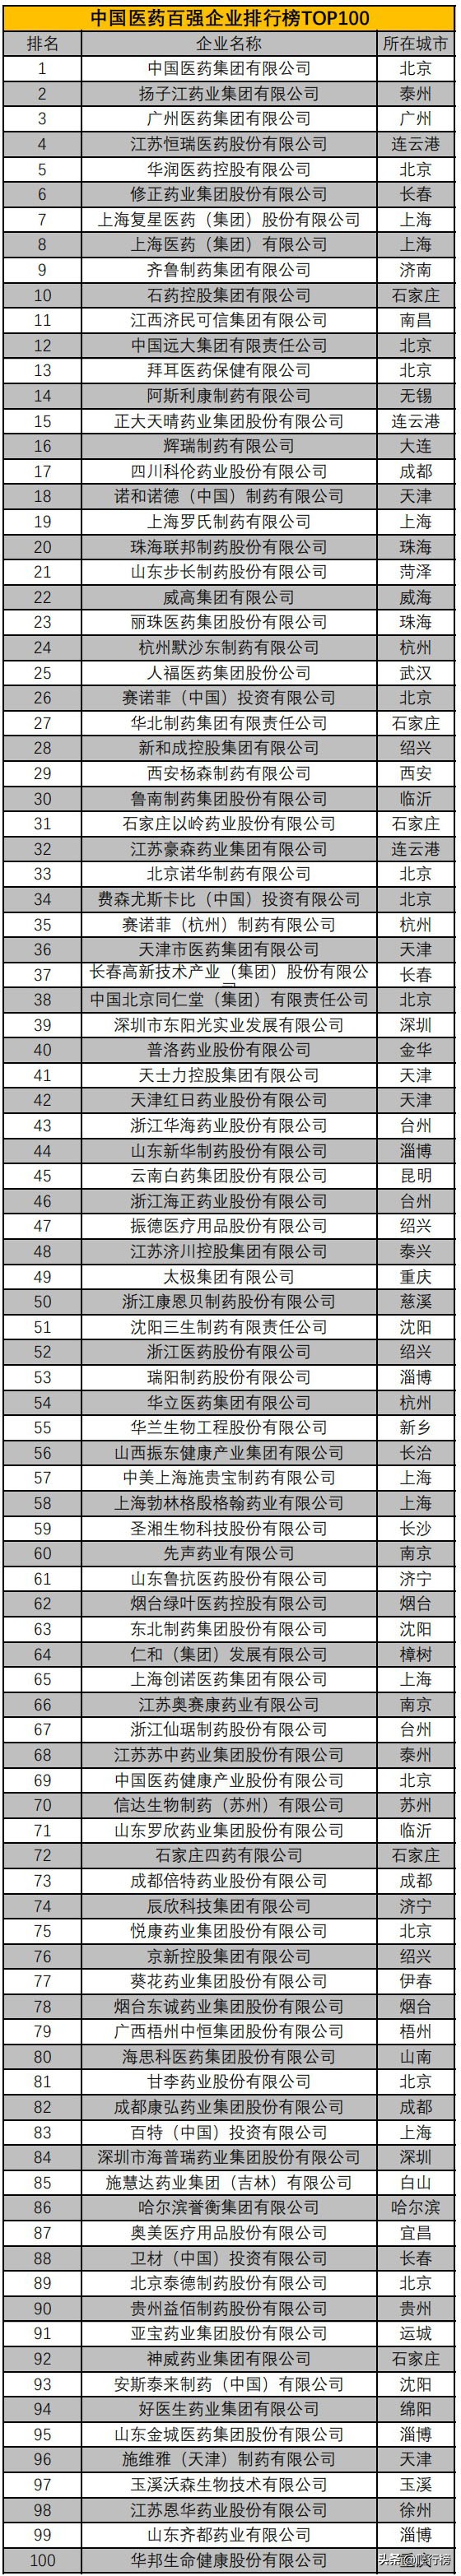 中国医药公司百强企业排行榜TOP100